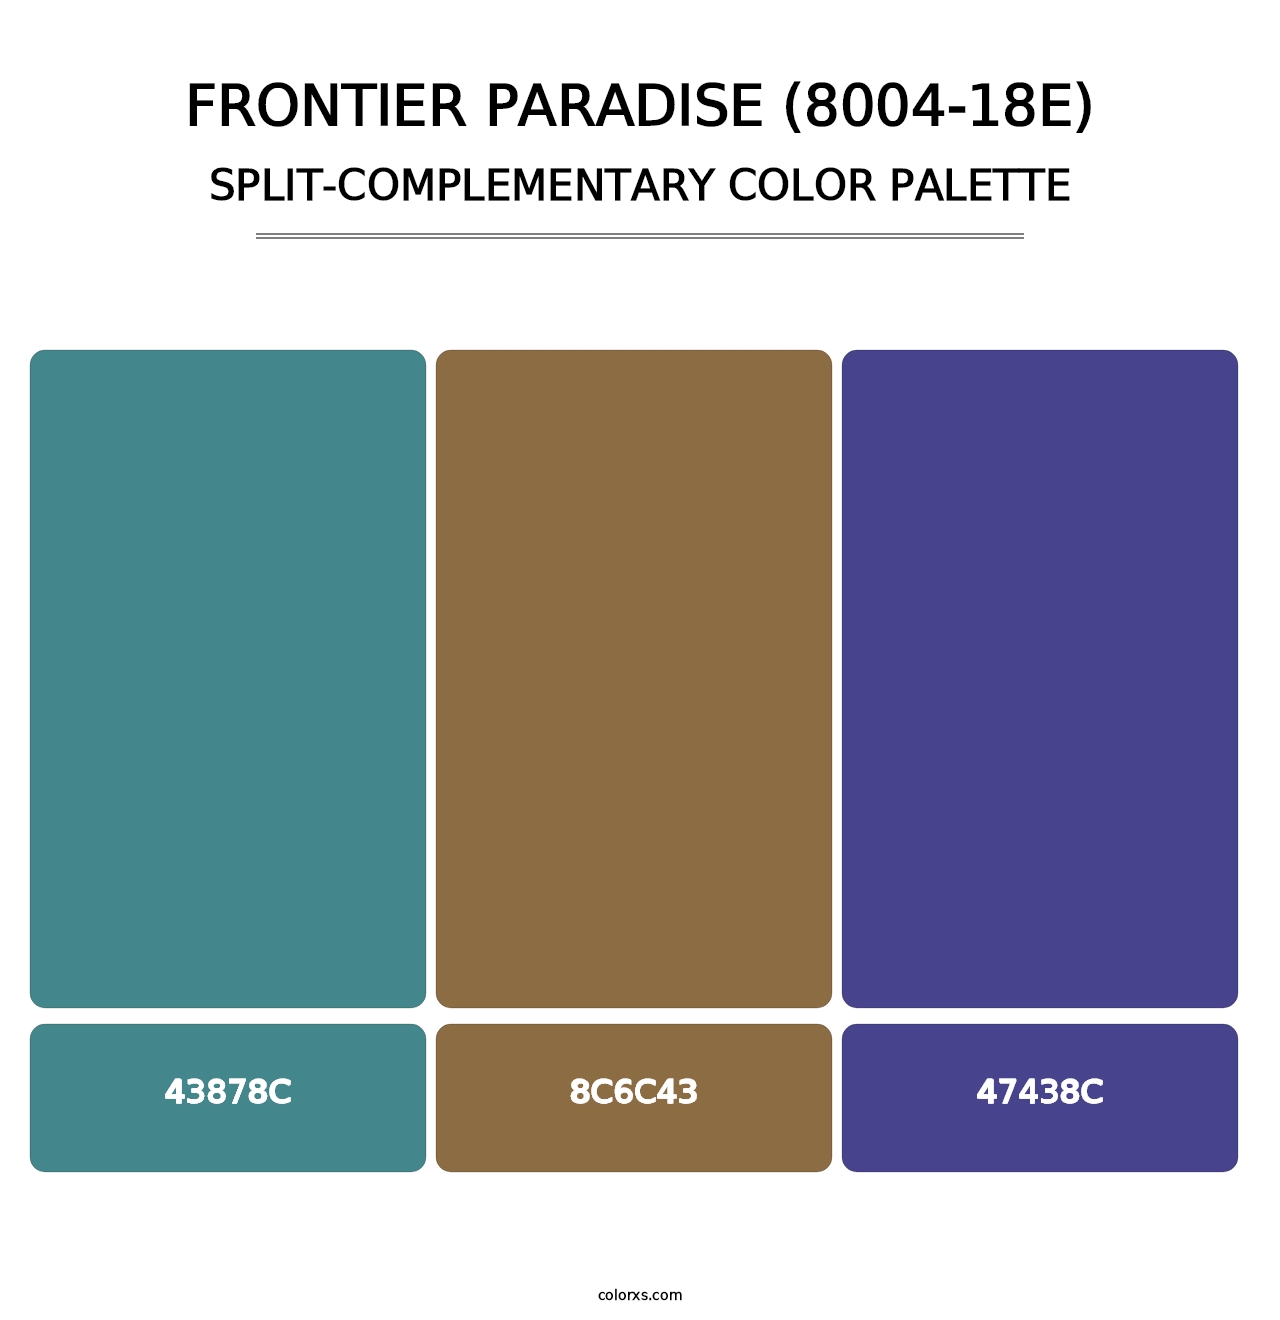 Frontier Paradise (8004-18E) - Split-Complementary Color Palette